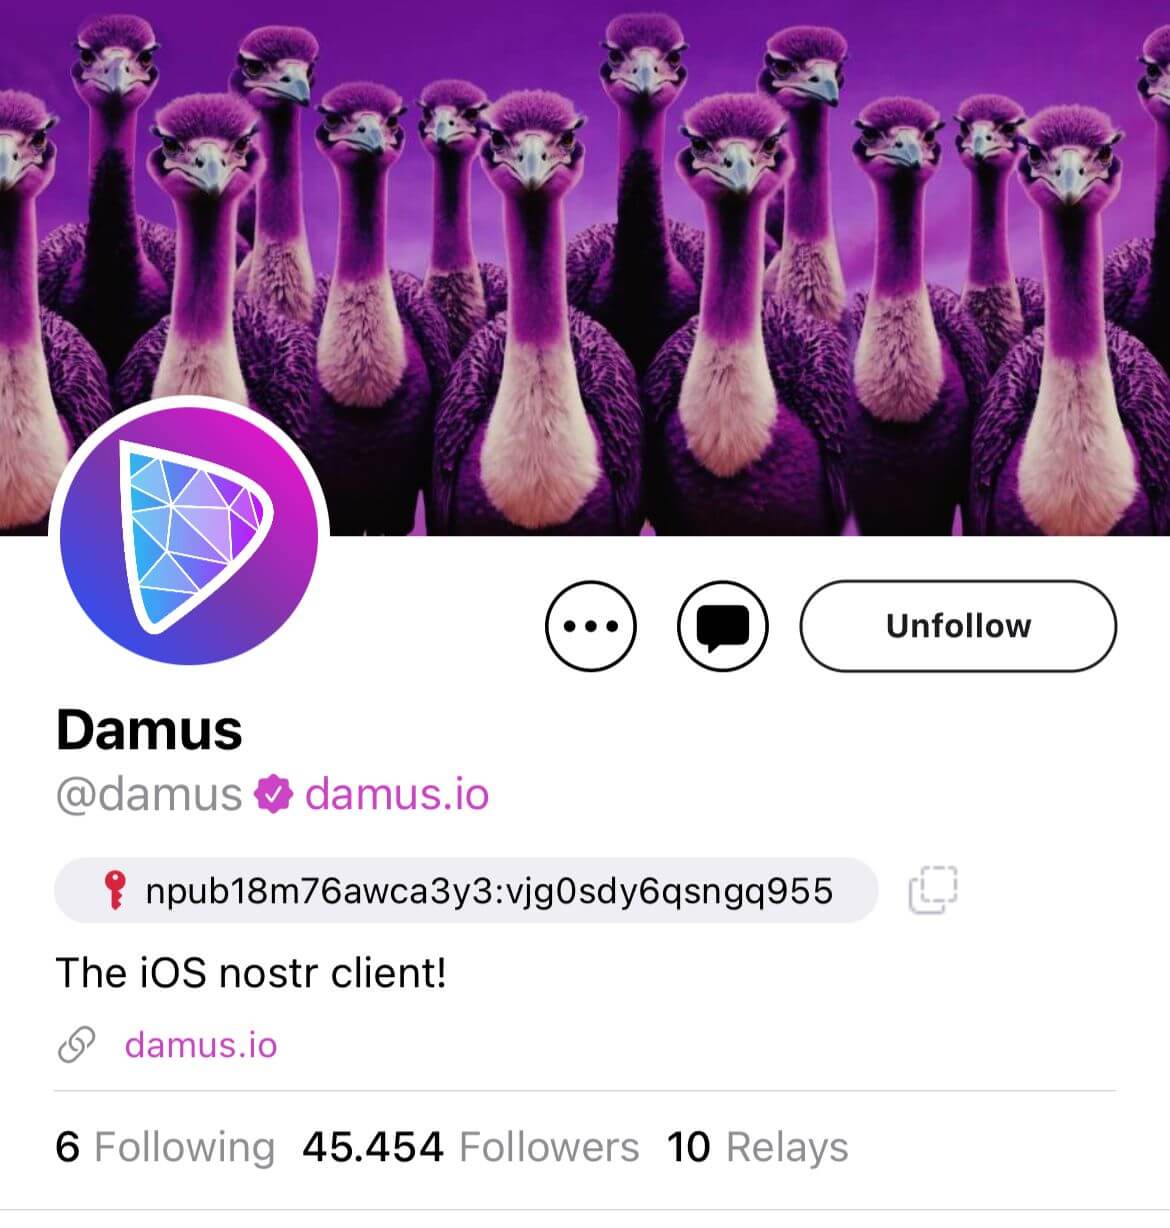  damus day social 45k platform members hits 